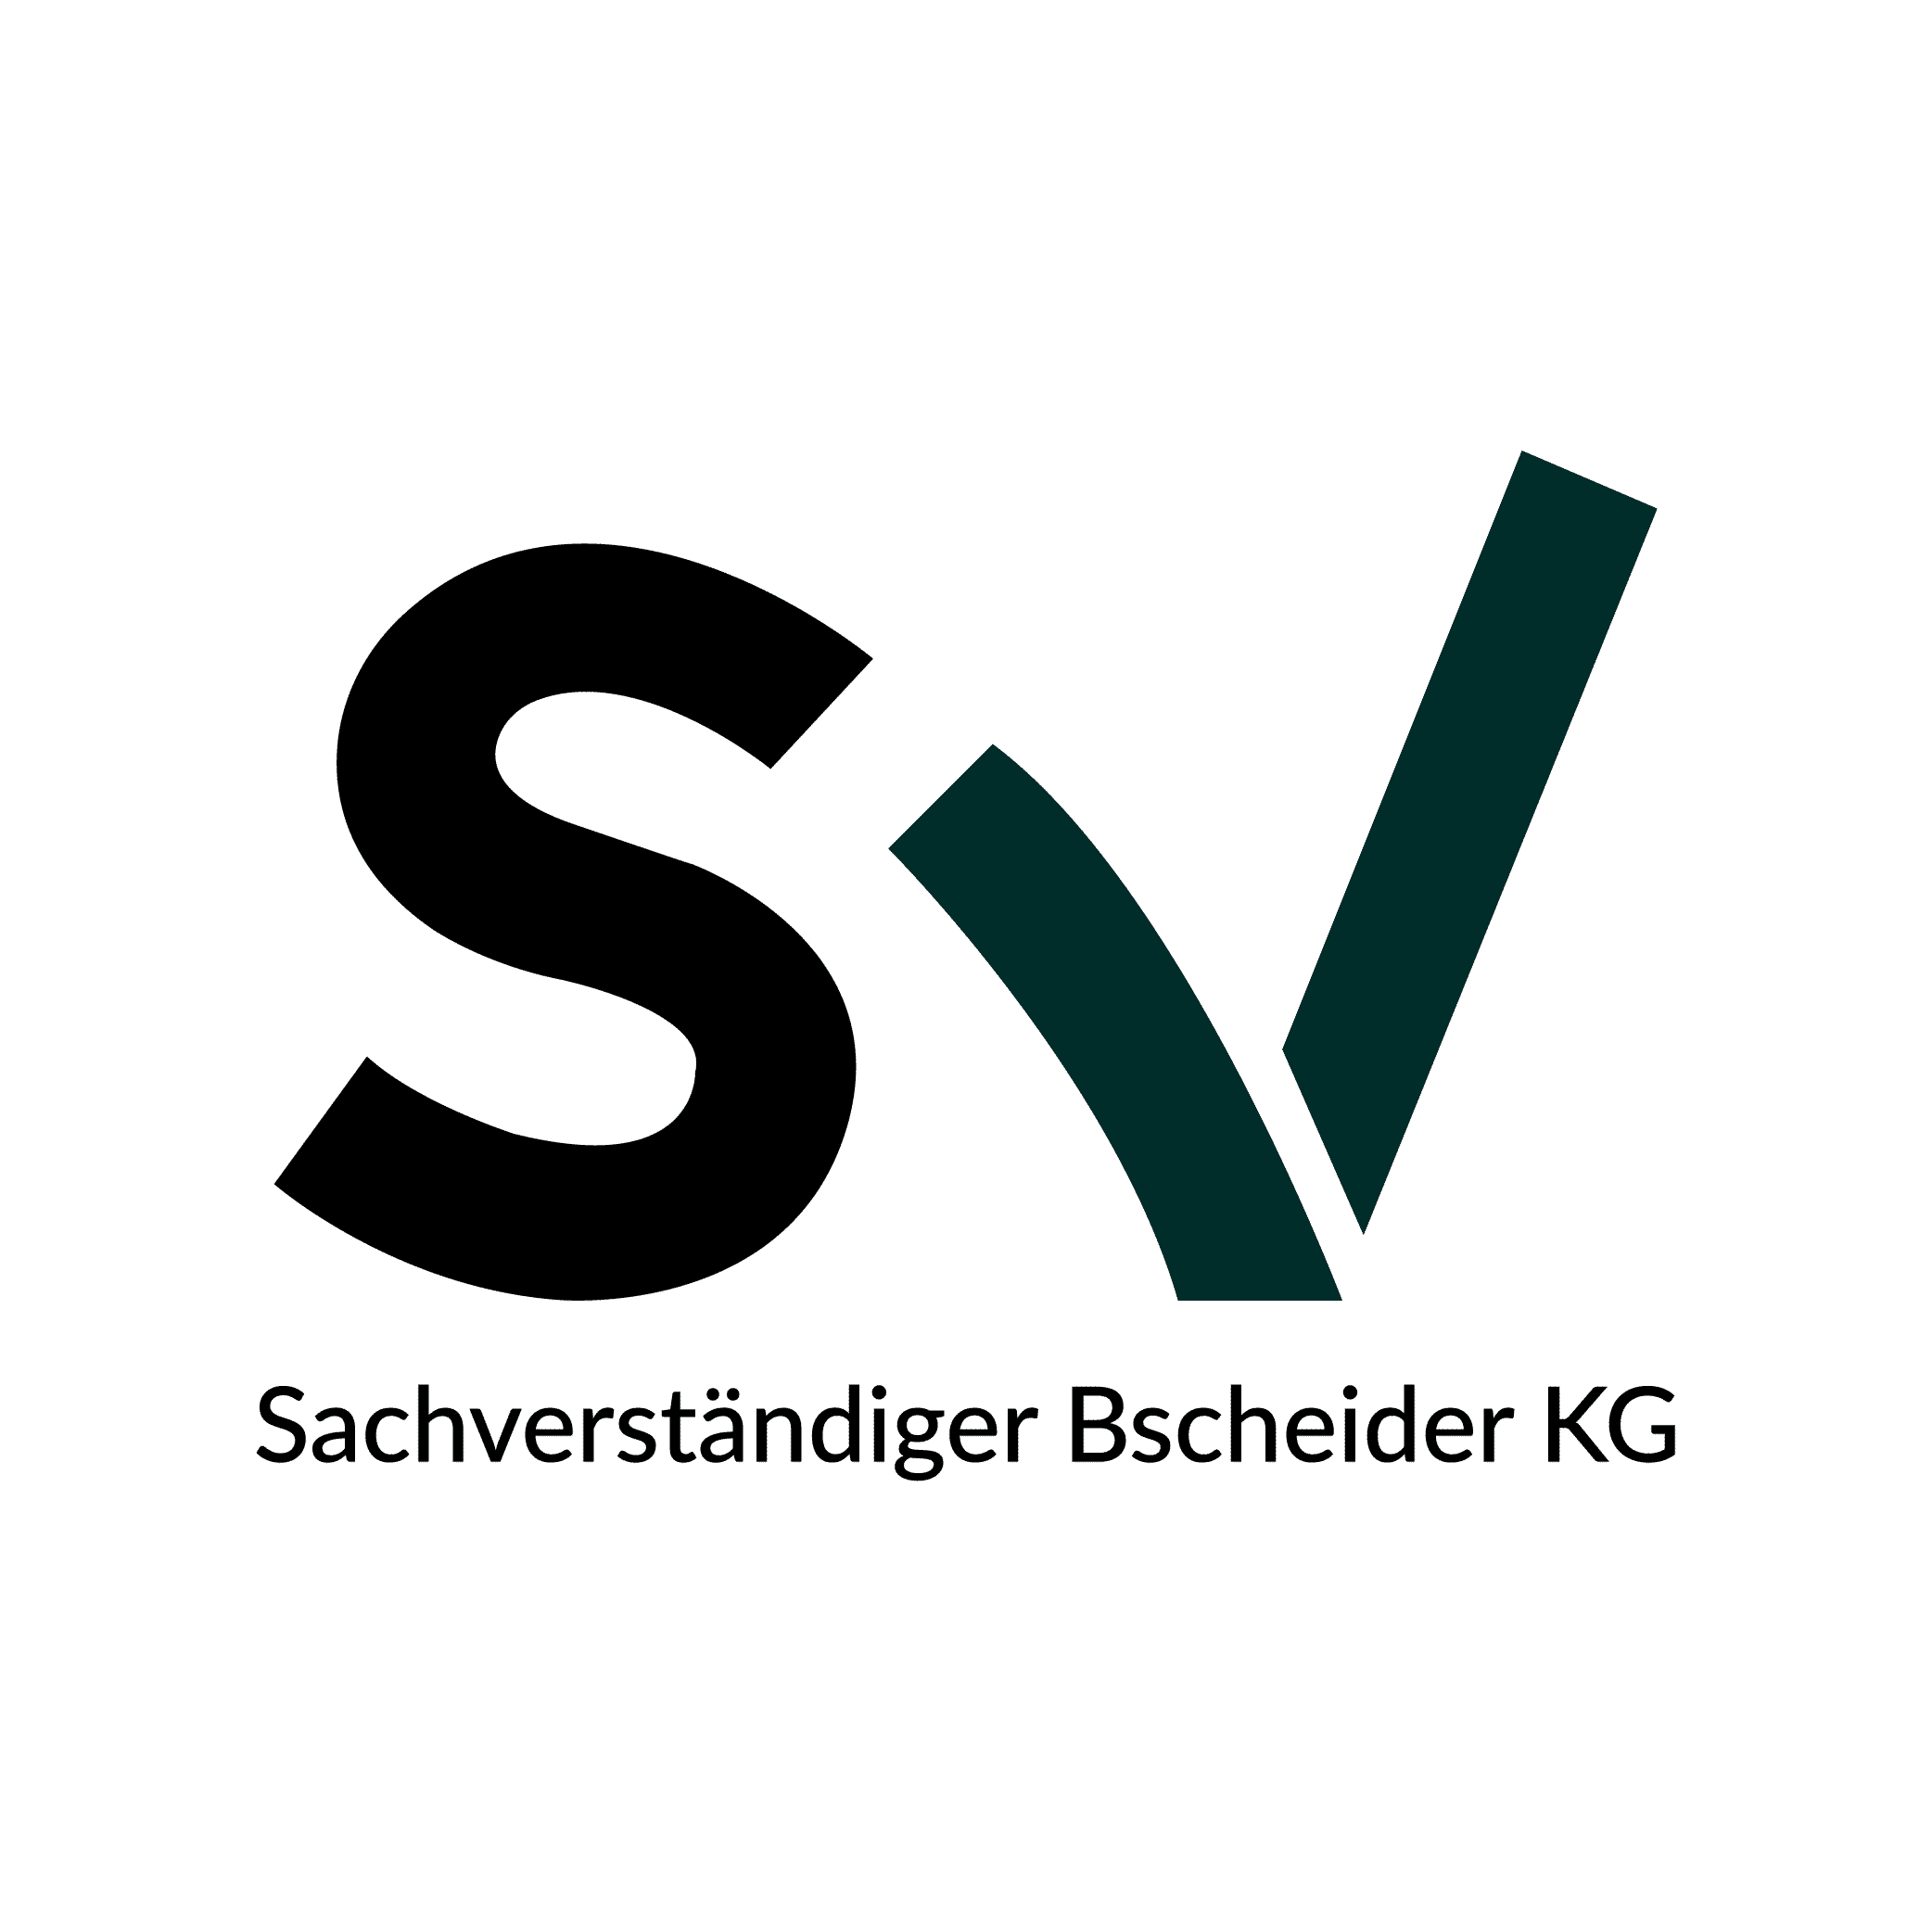 Bscheider-Logo_Zeichenflaeche-1-1-1.png